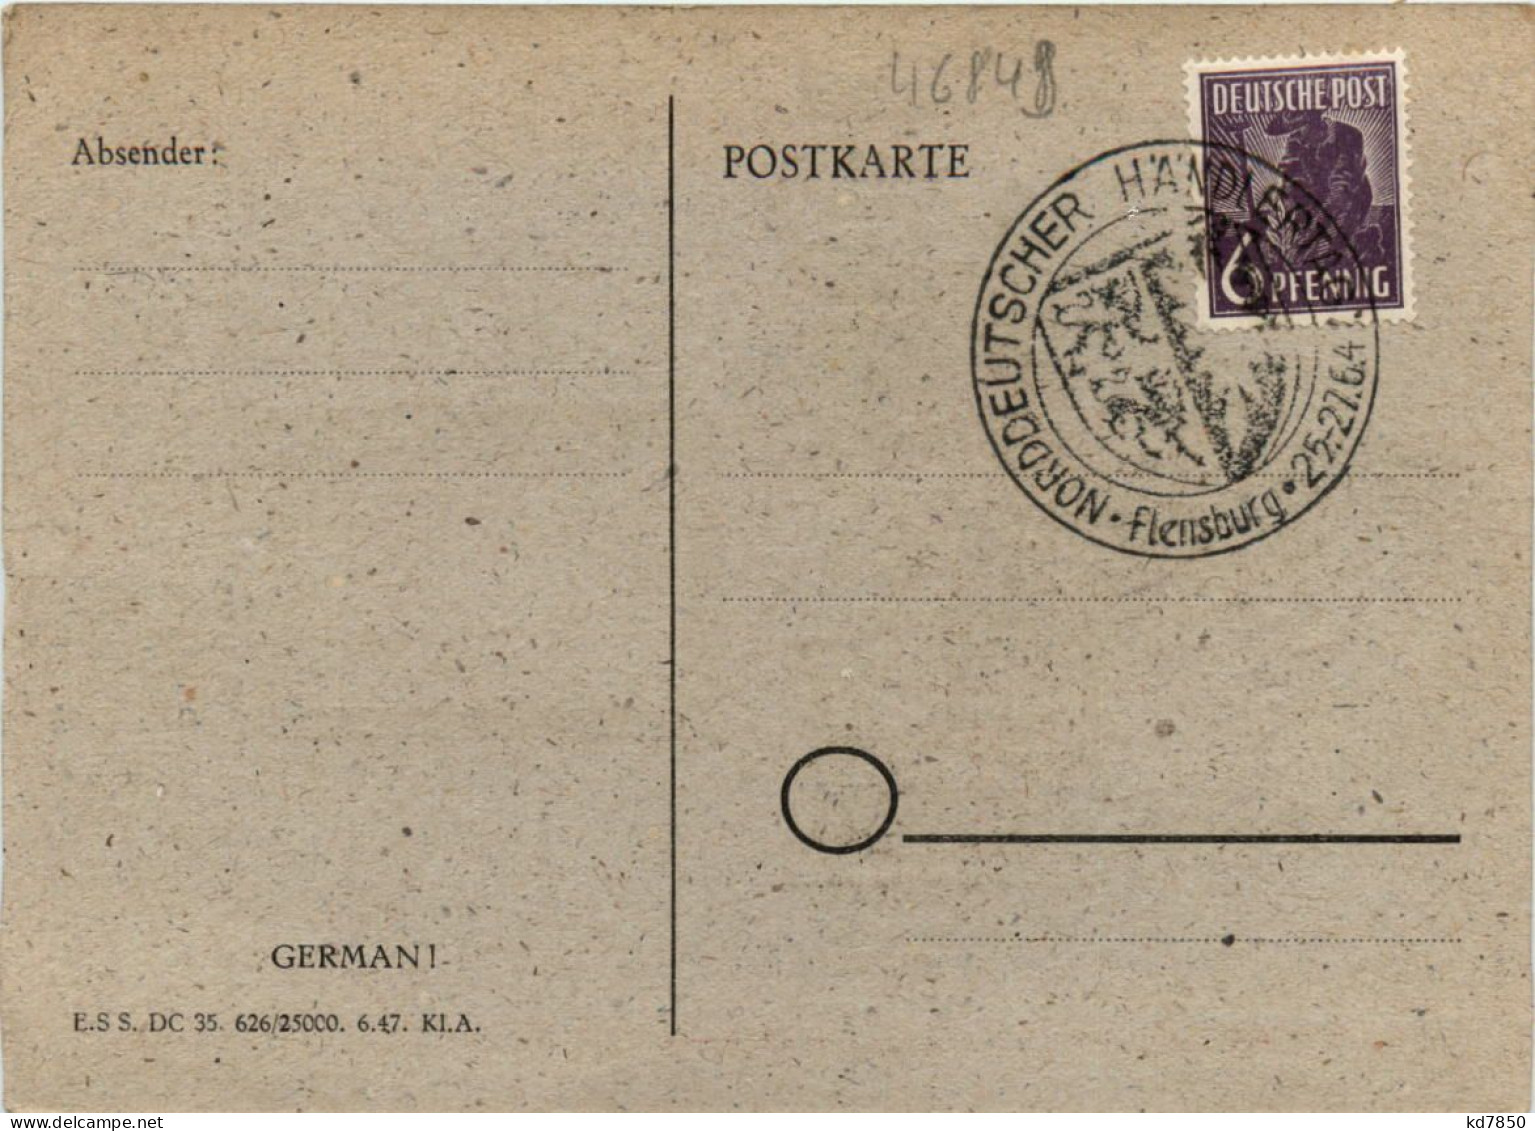 Flensburg - Briefmarken Ausstellung 1947 - Flensburg